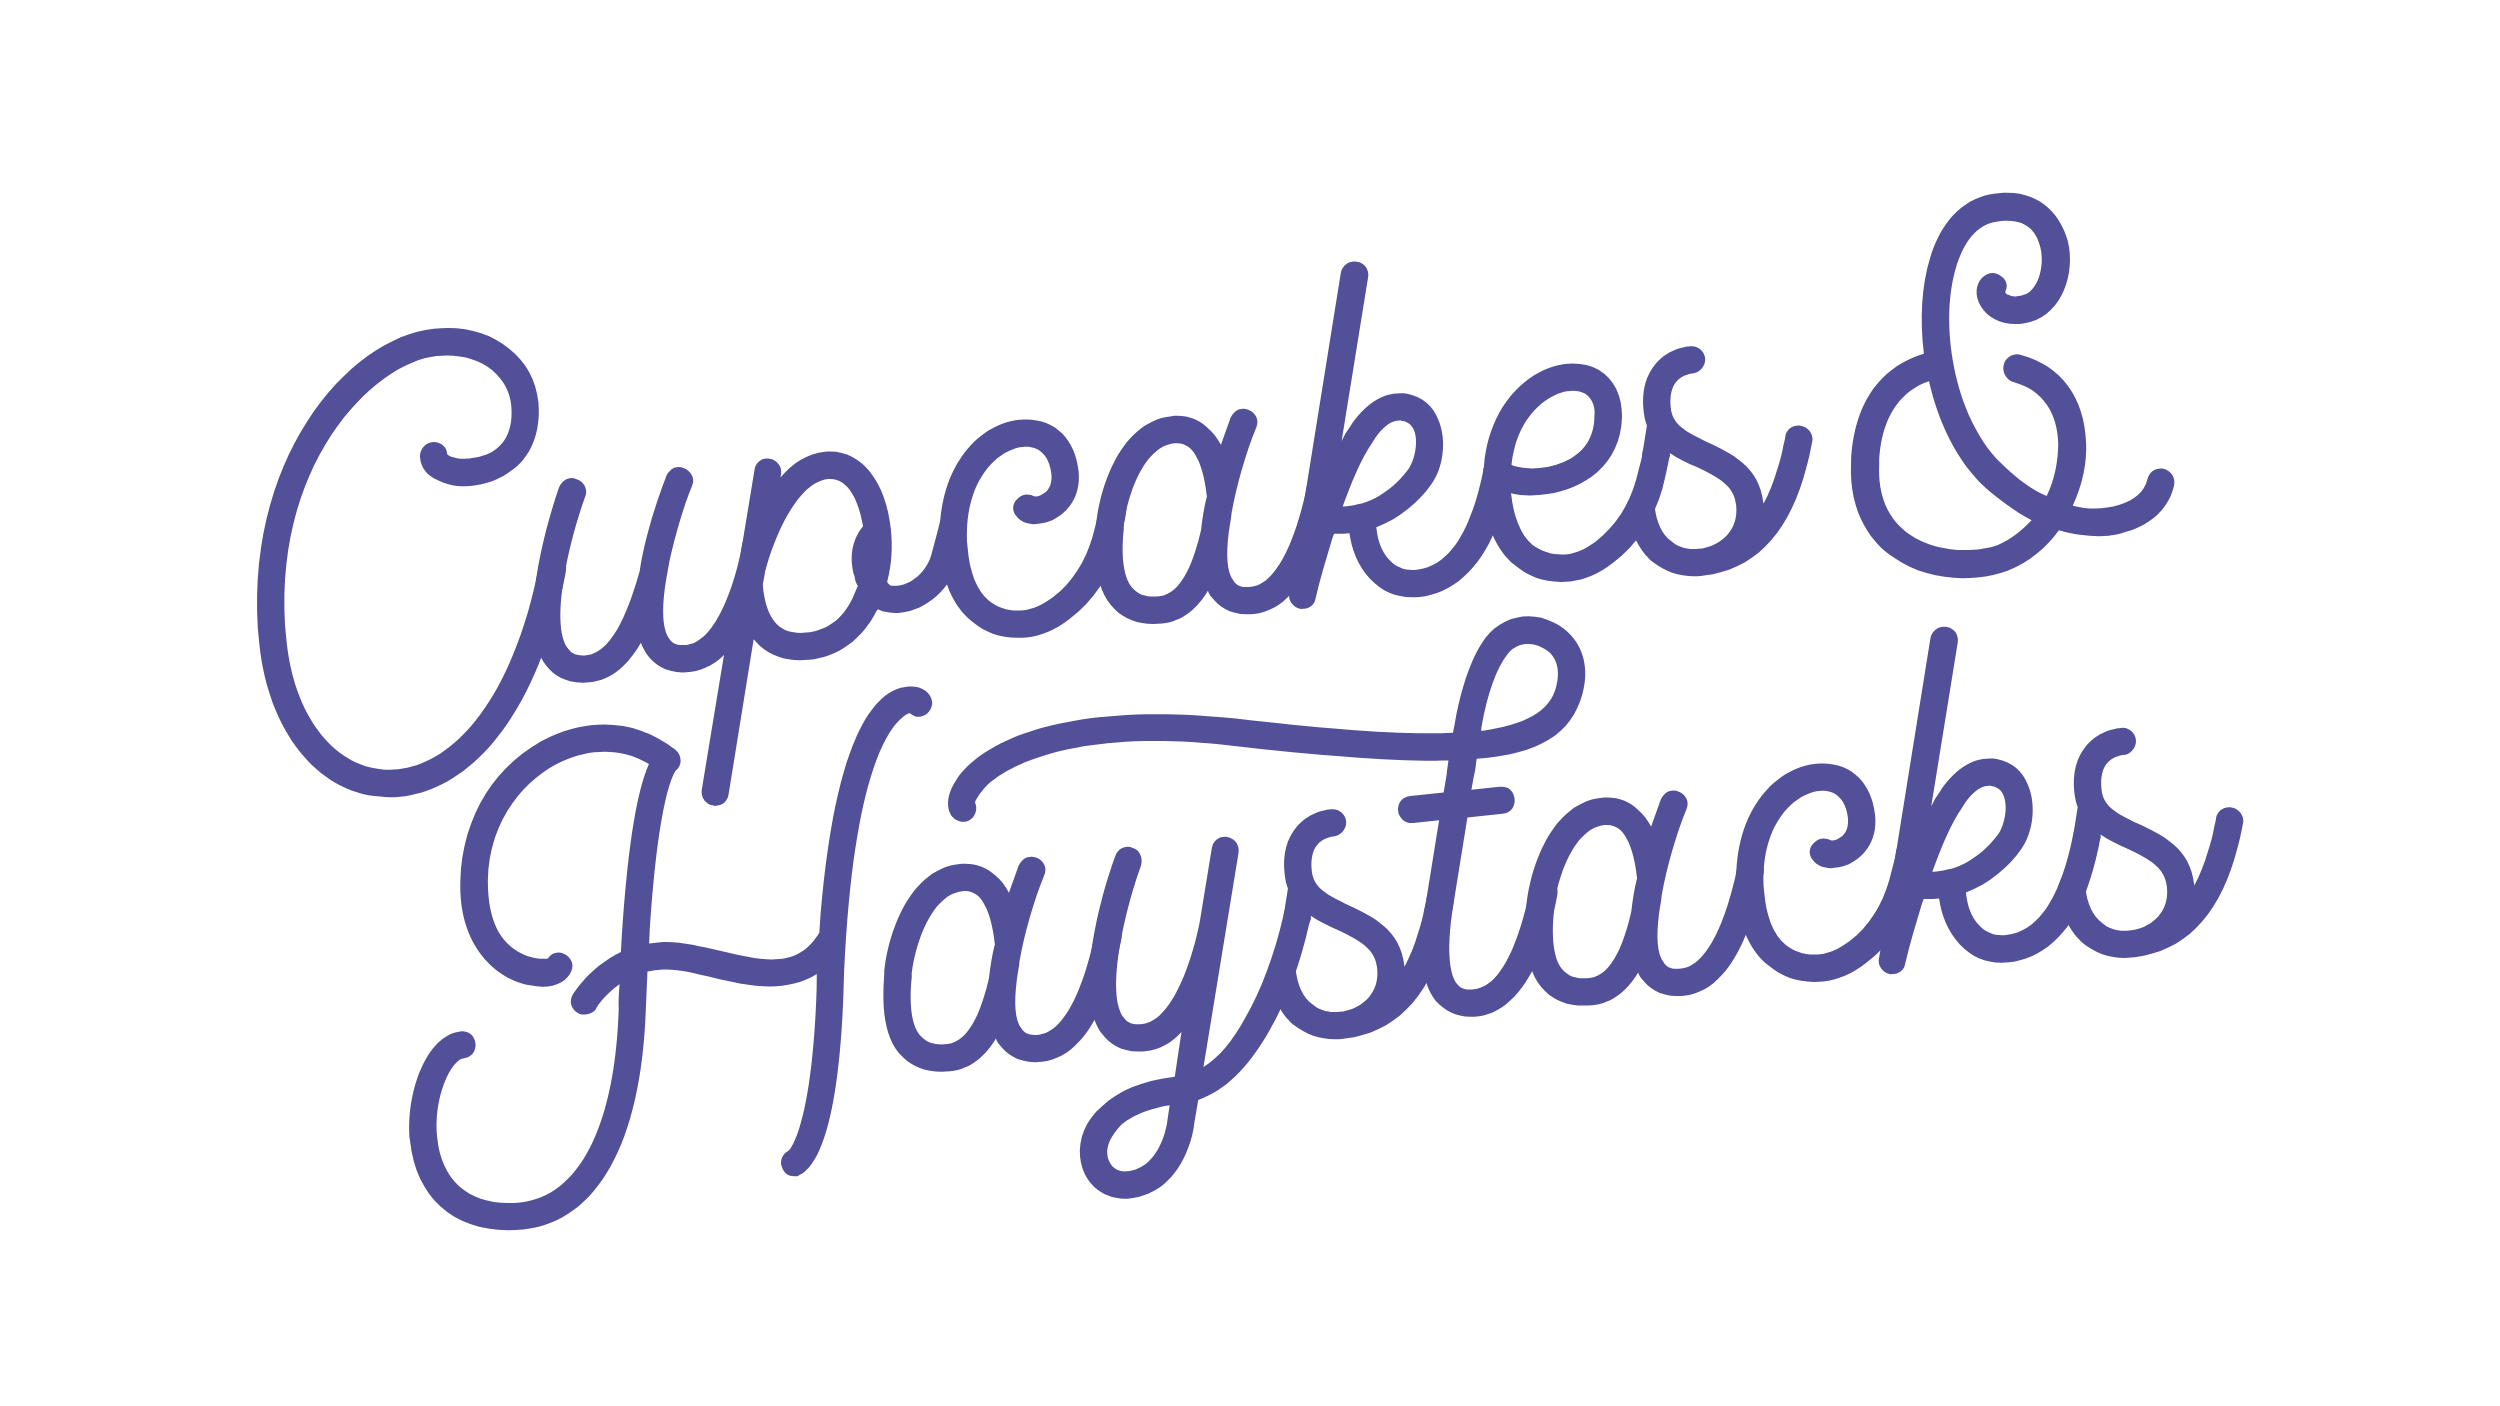 Cupcakes & Haystacks